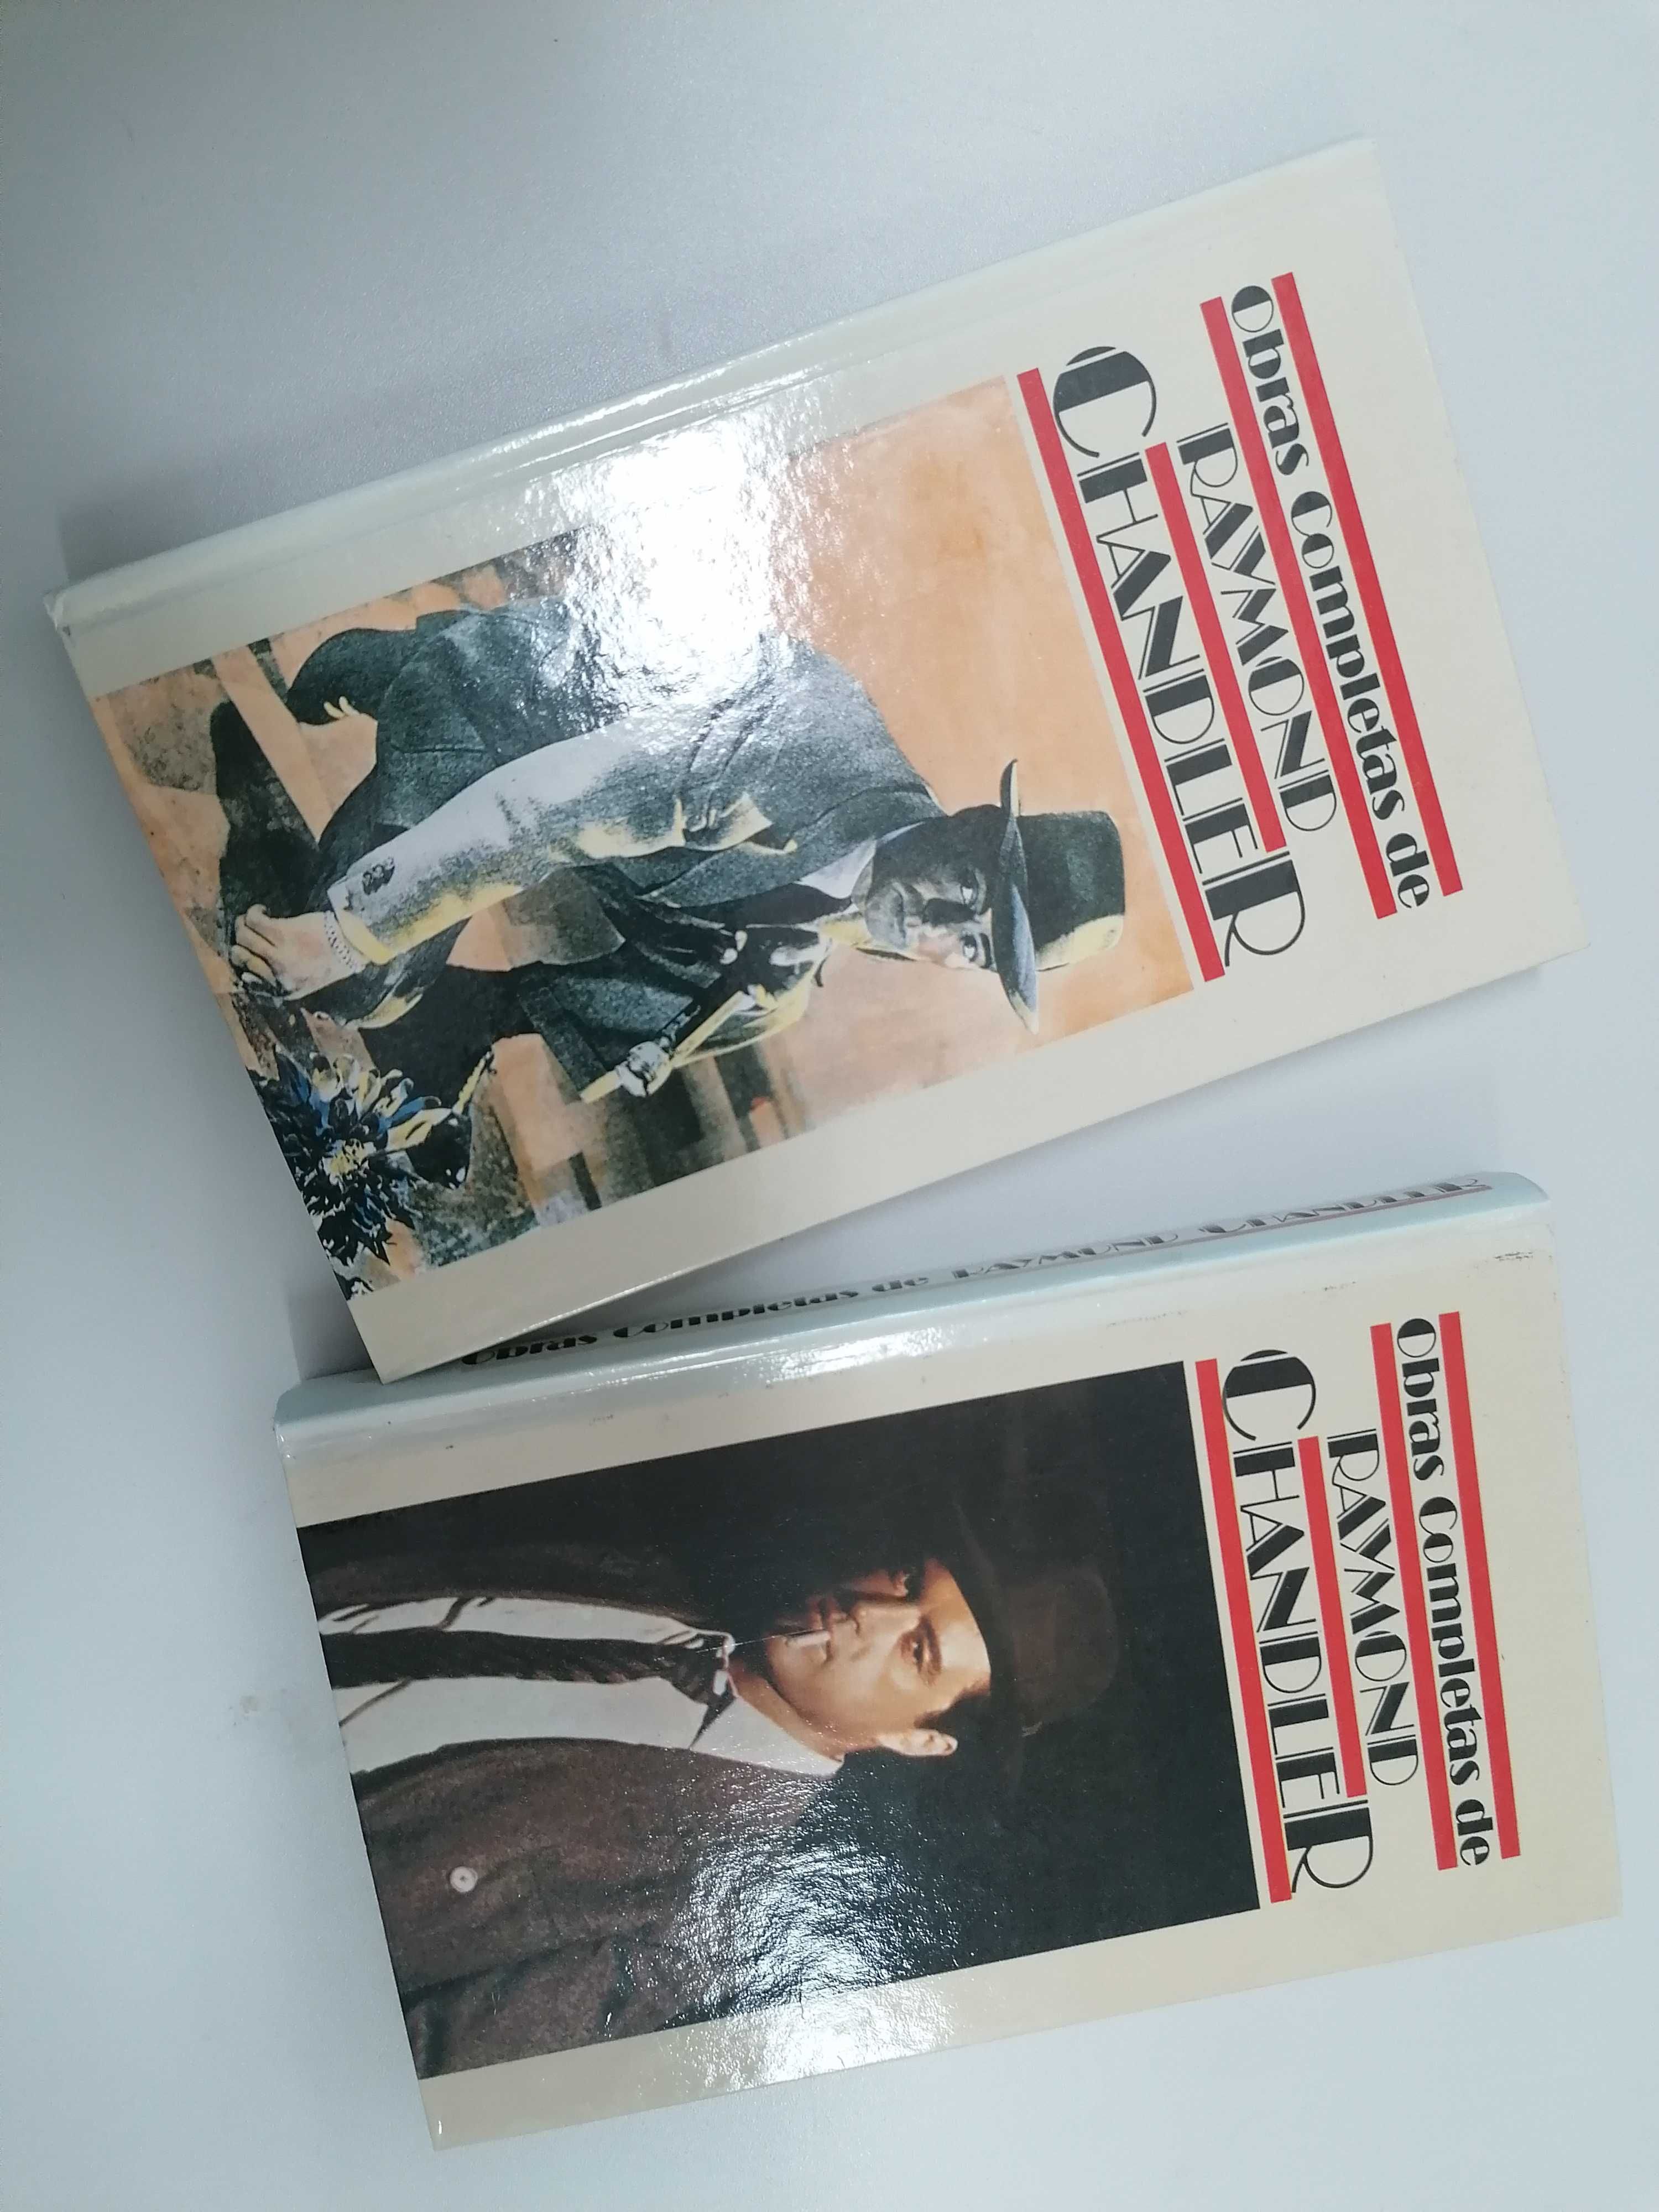 2 livros de Raymond Chandler